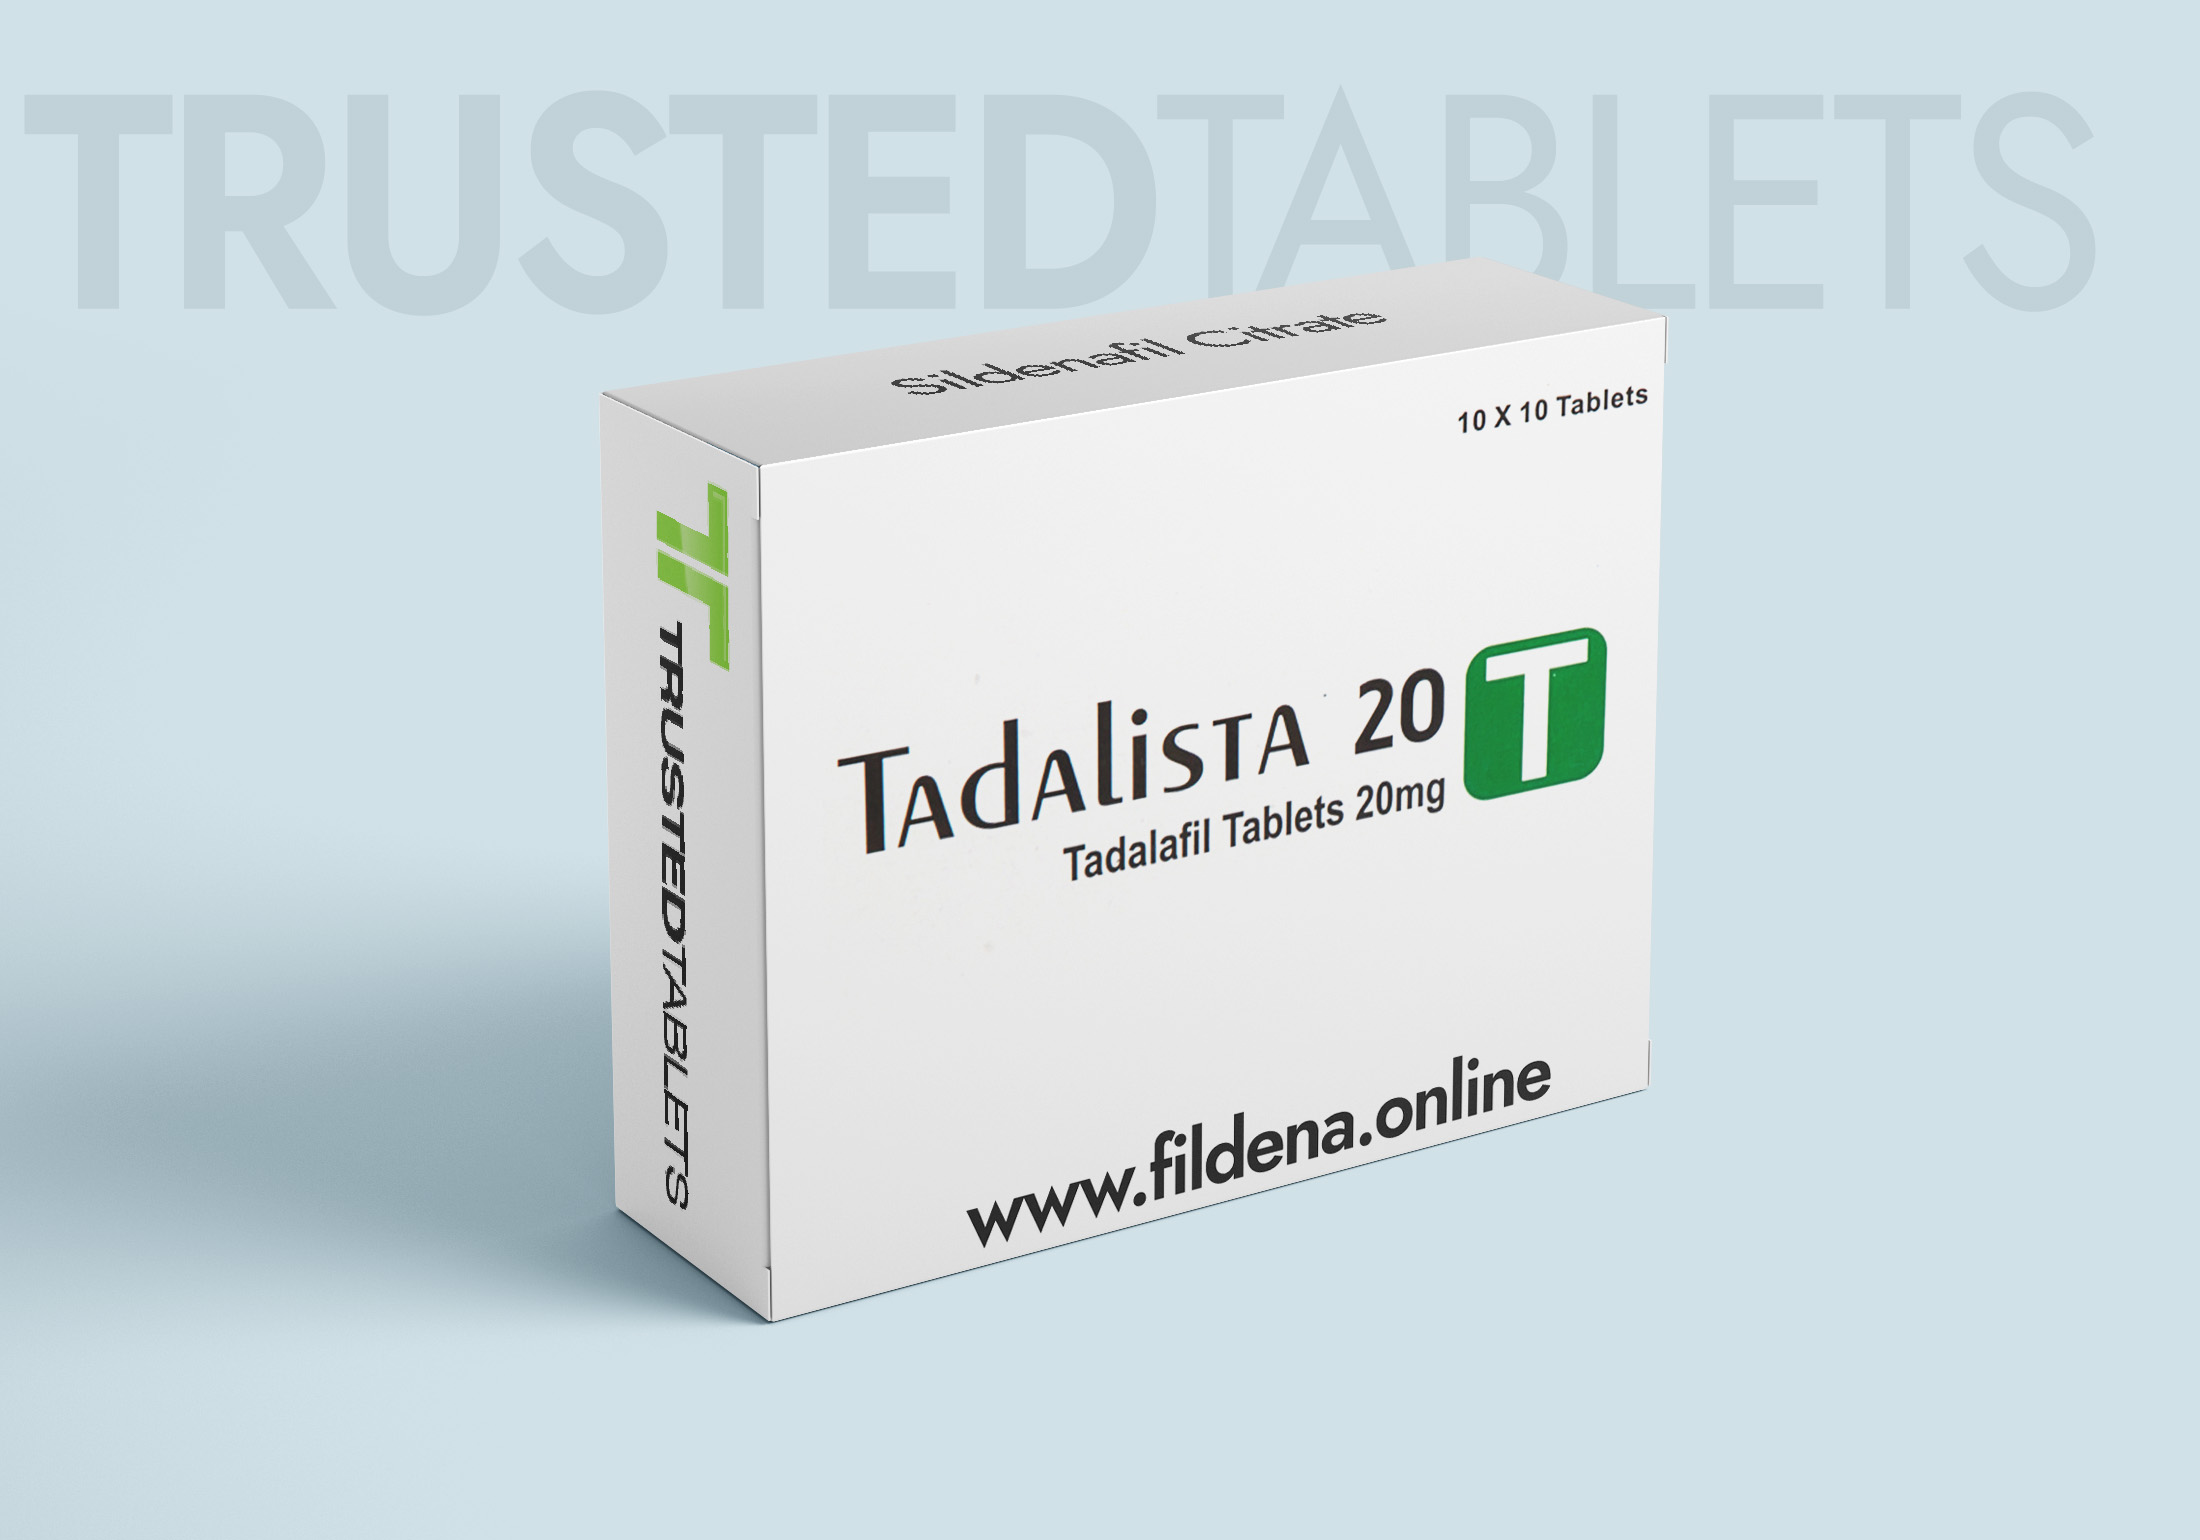 Tadalista TrustedTablets